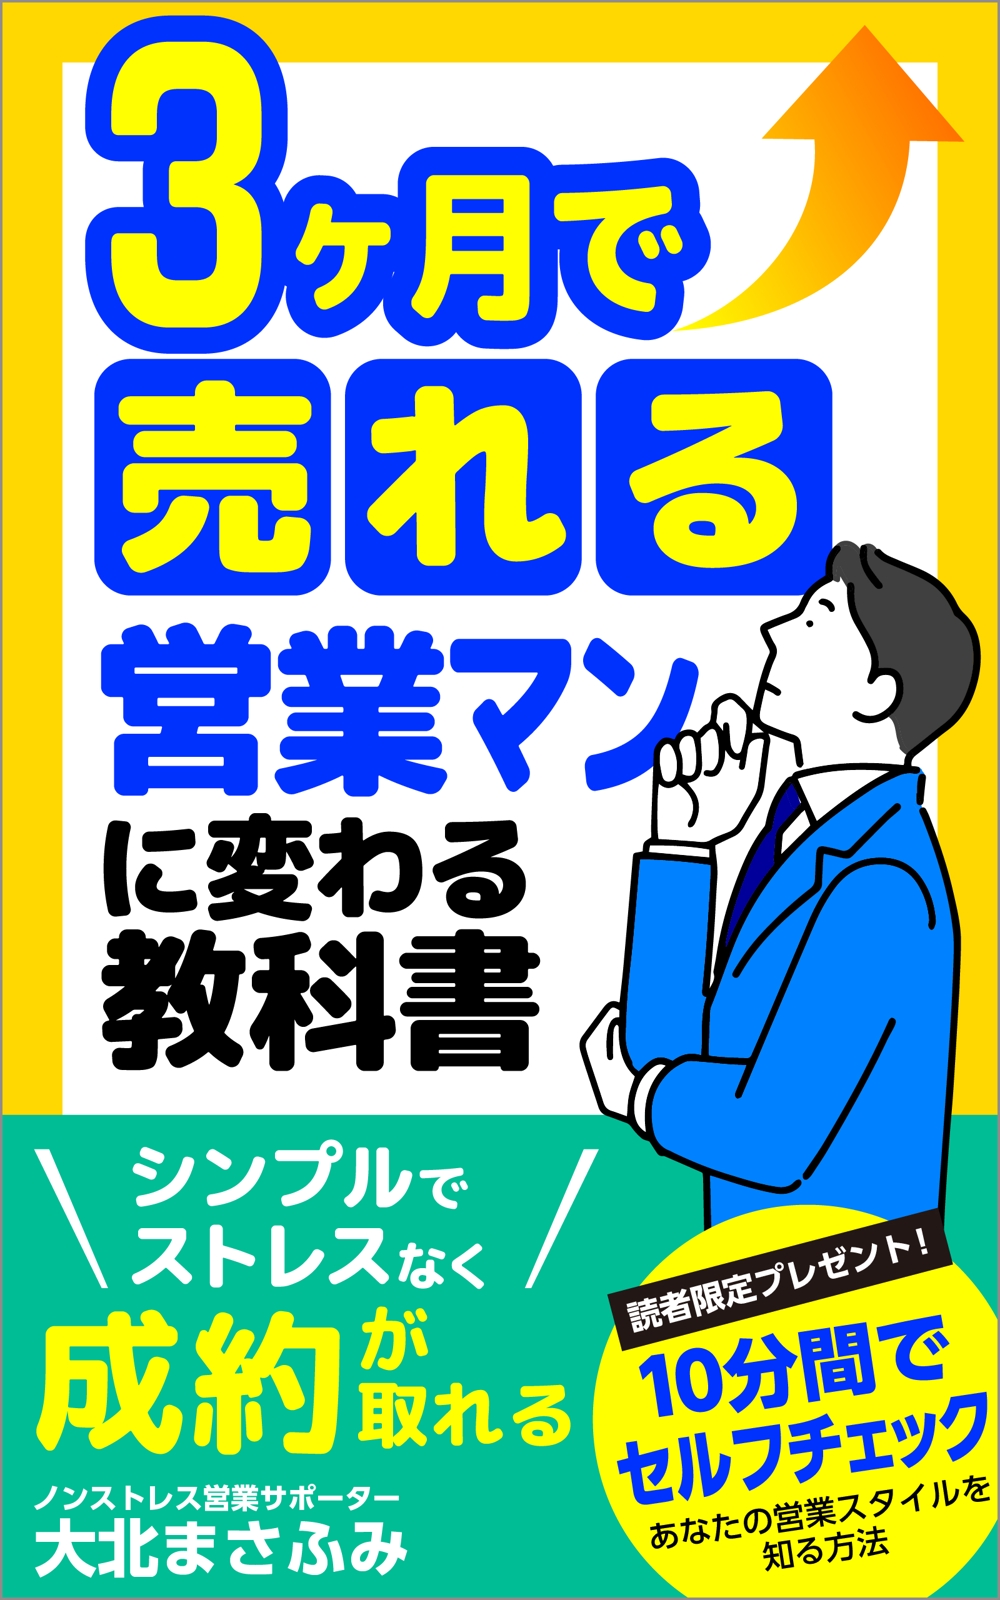 3ヶ月で売れる営業マンに変わる教科書-02.jpg